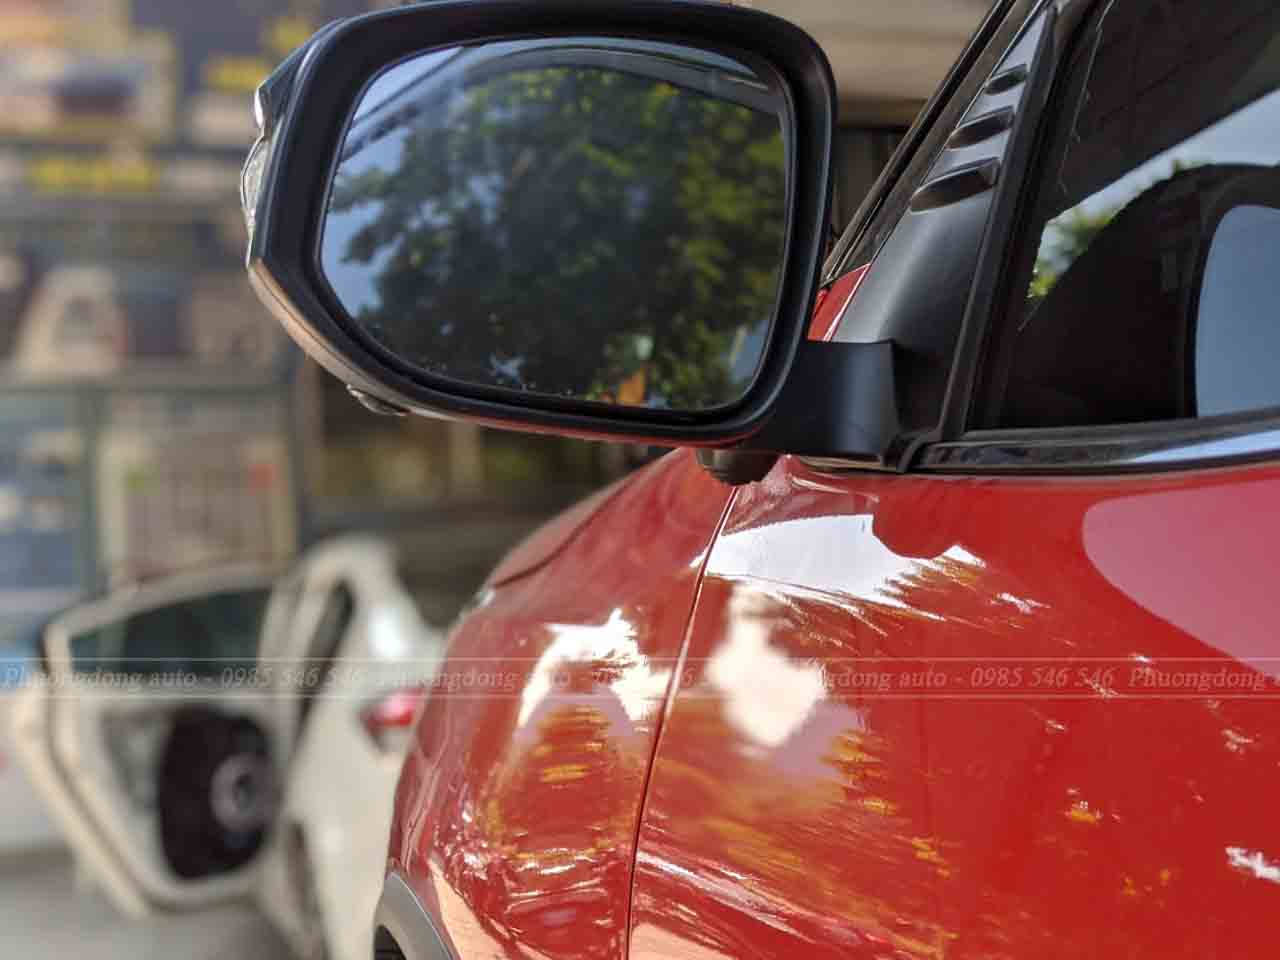 Bộ đôi sản phẩm Cam 360 DCT và màn hình Gotech được lắp đặt trên chiếc xe Fortuner Legender để thay thế cho màn và cam theo xe đã nâng tầm chiếc xe lên một tầm cao mới. Nâng cấp các tính năng giải trí và hỗ trợ lái xe an toàn cho mọi chiếc xe.